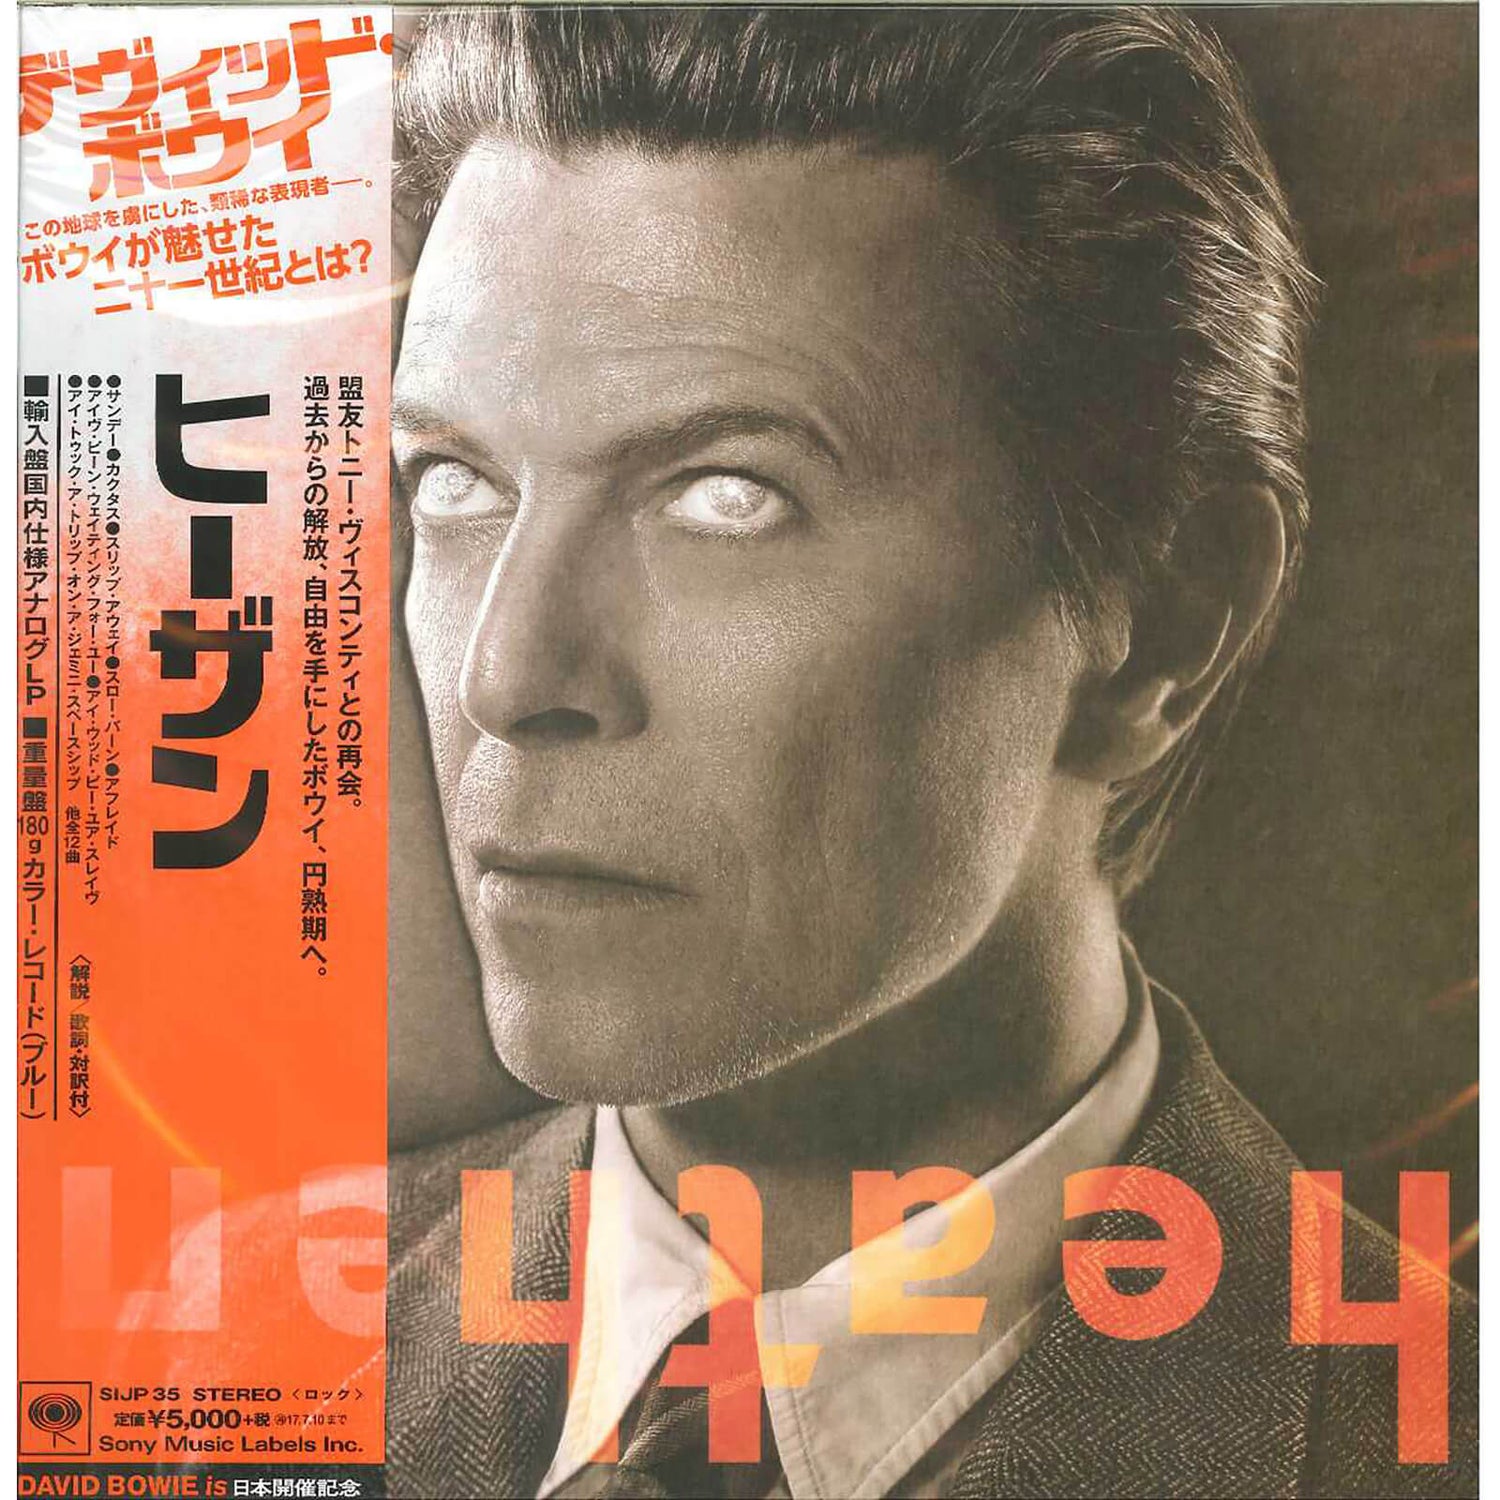 David Bowie - Heathen LP Édition japonaise